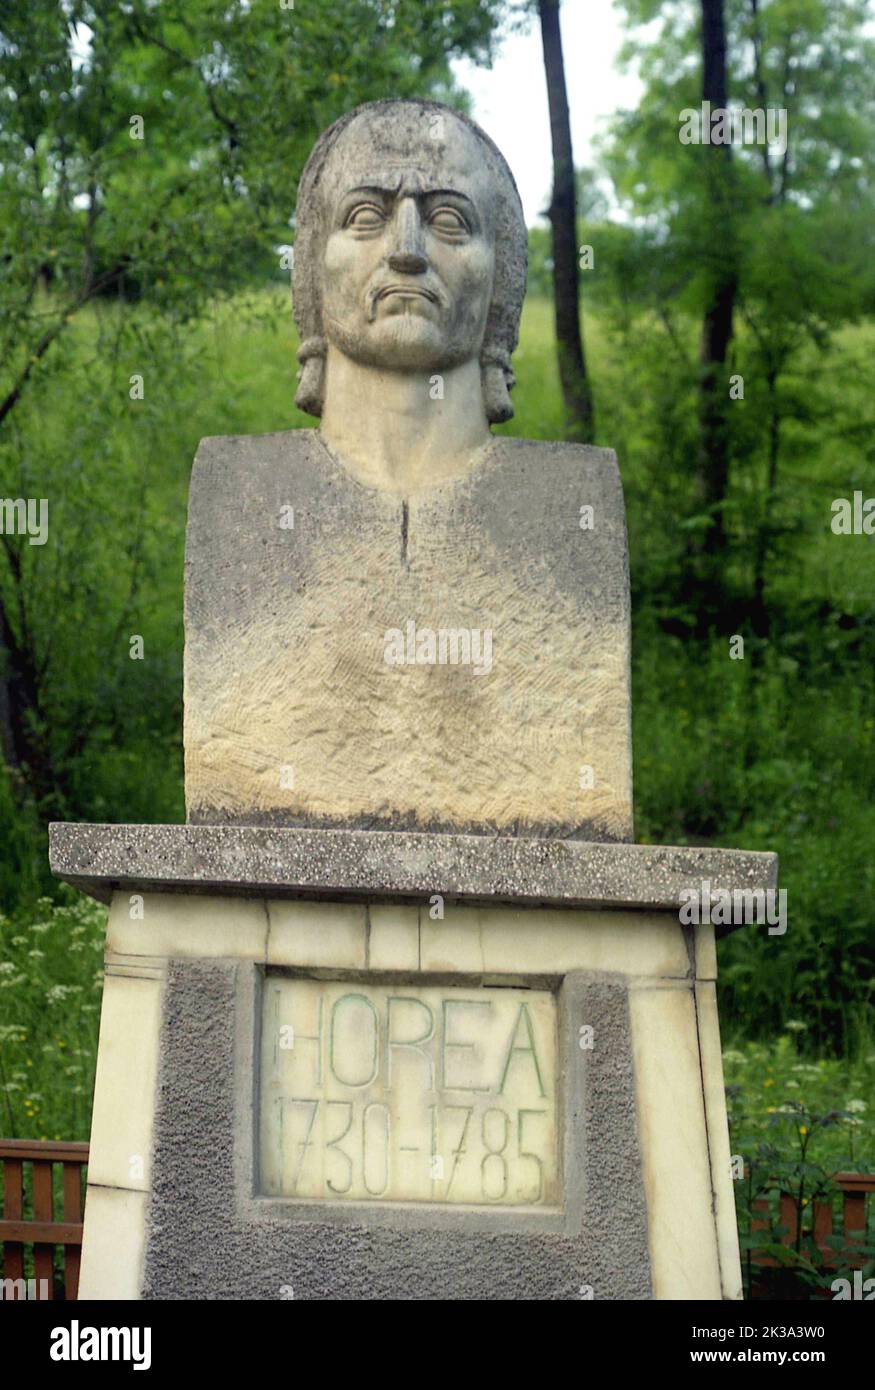 Pueblo de Horea, Condado de Alba, Rumania, aprox. 1999. Busto del héroe rumano Horea en su lugar natal. Foto de stock